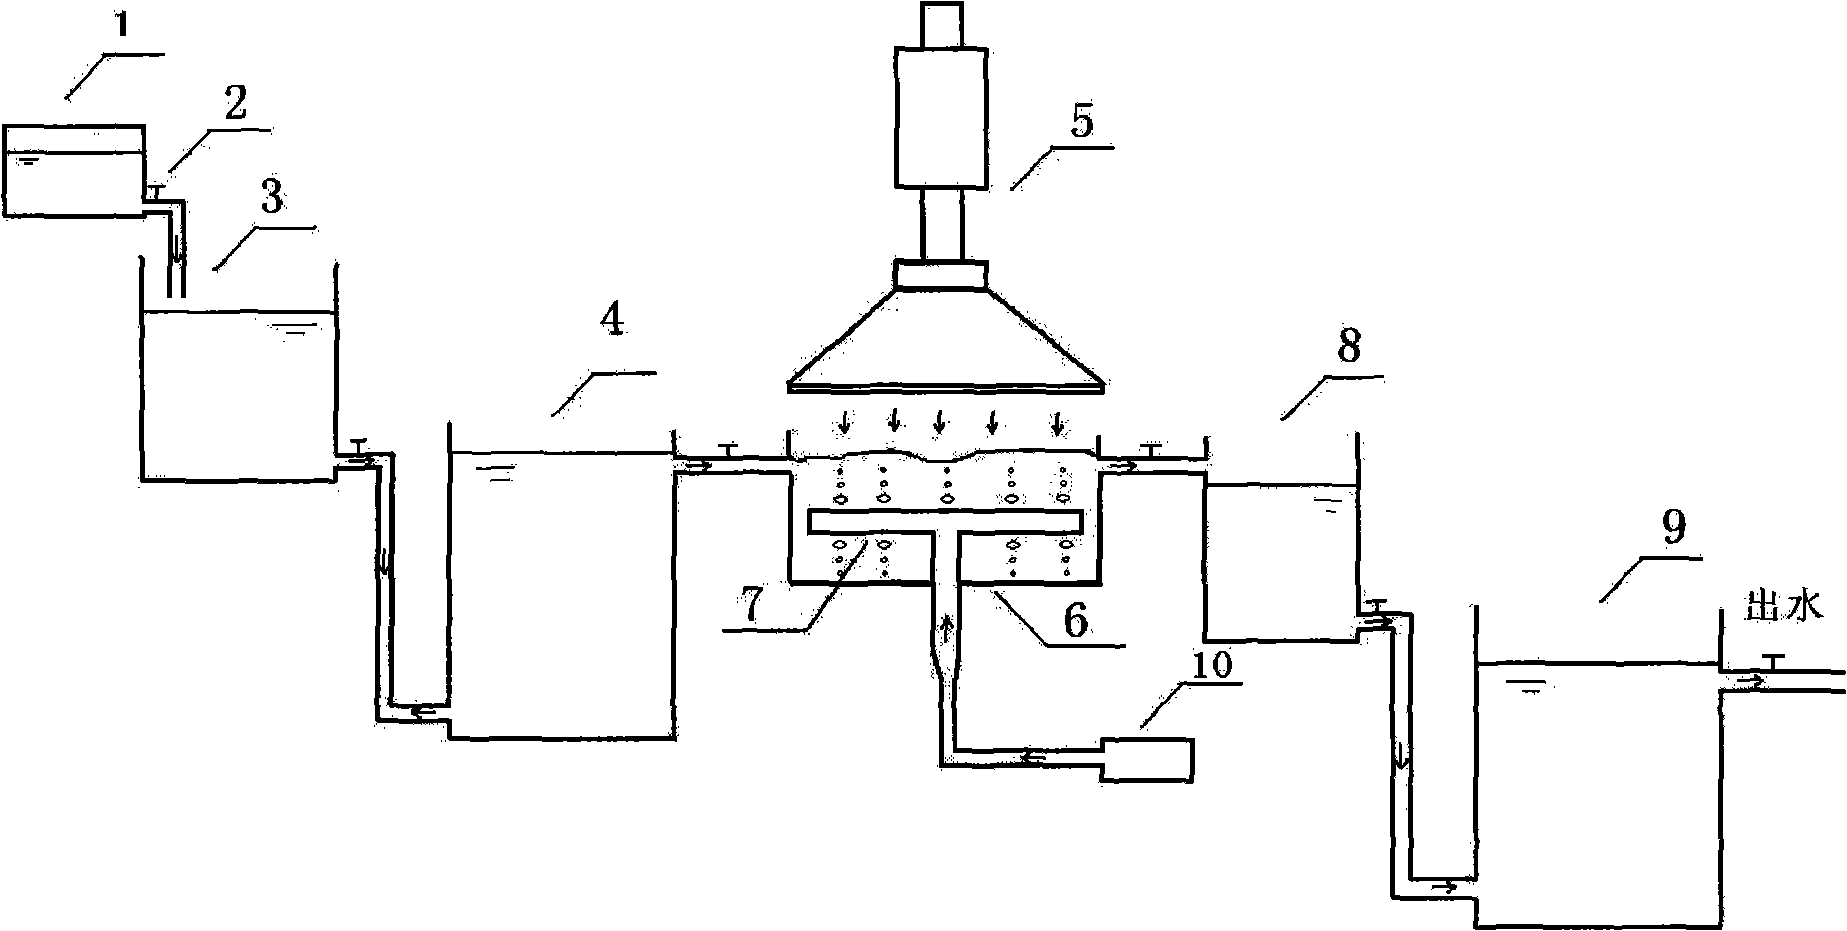 Method for radiation treatment of chloromycetin wastewater